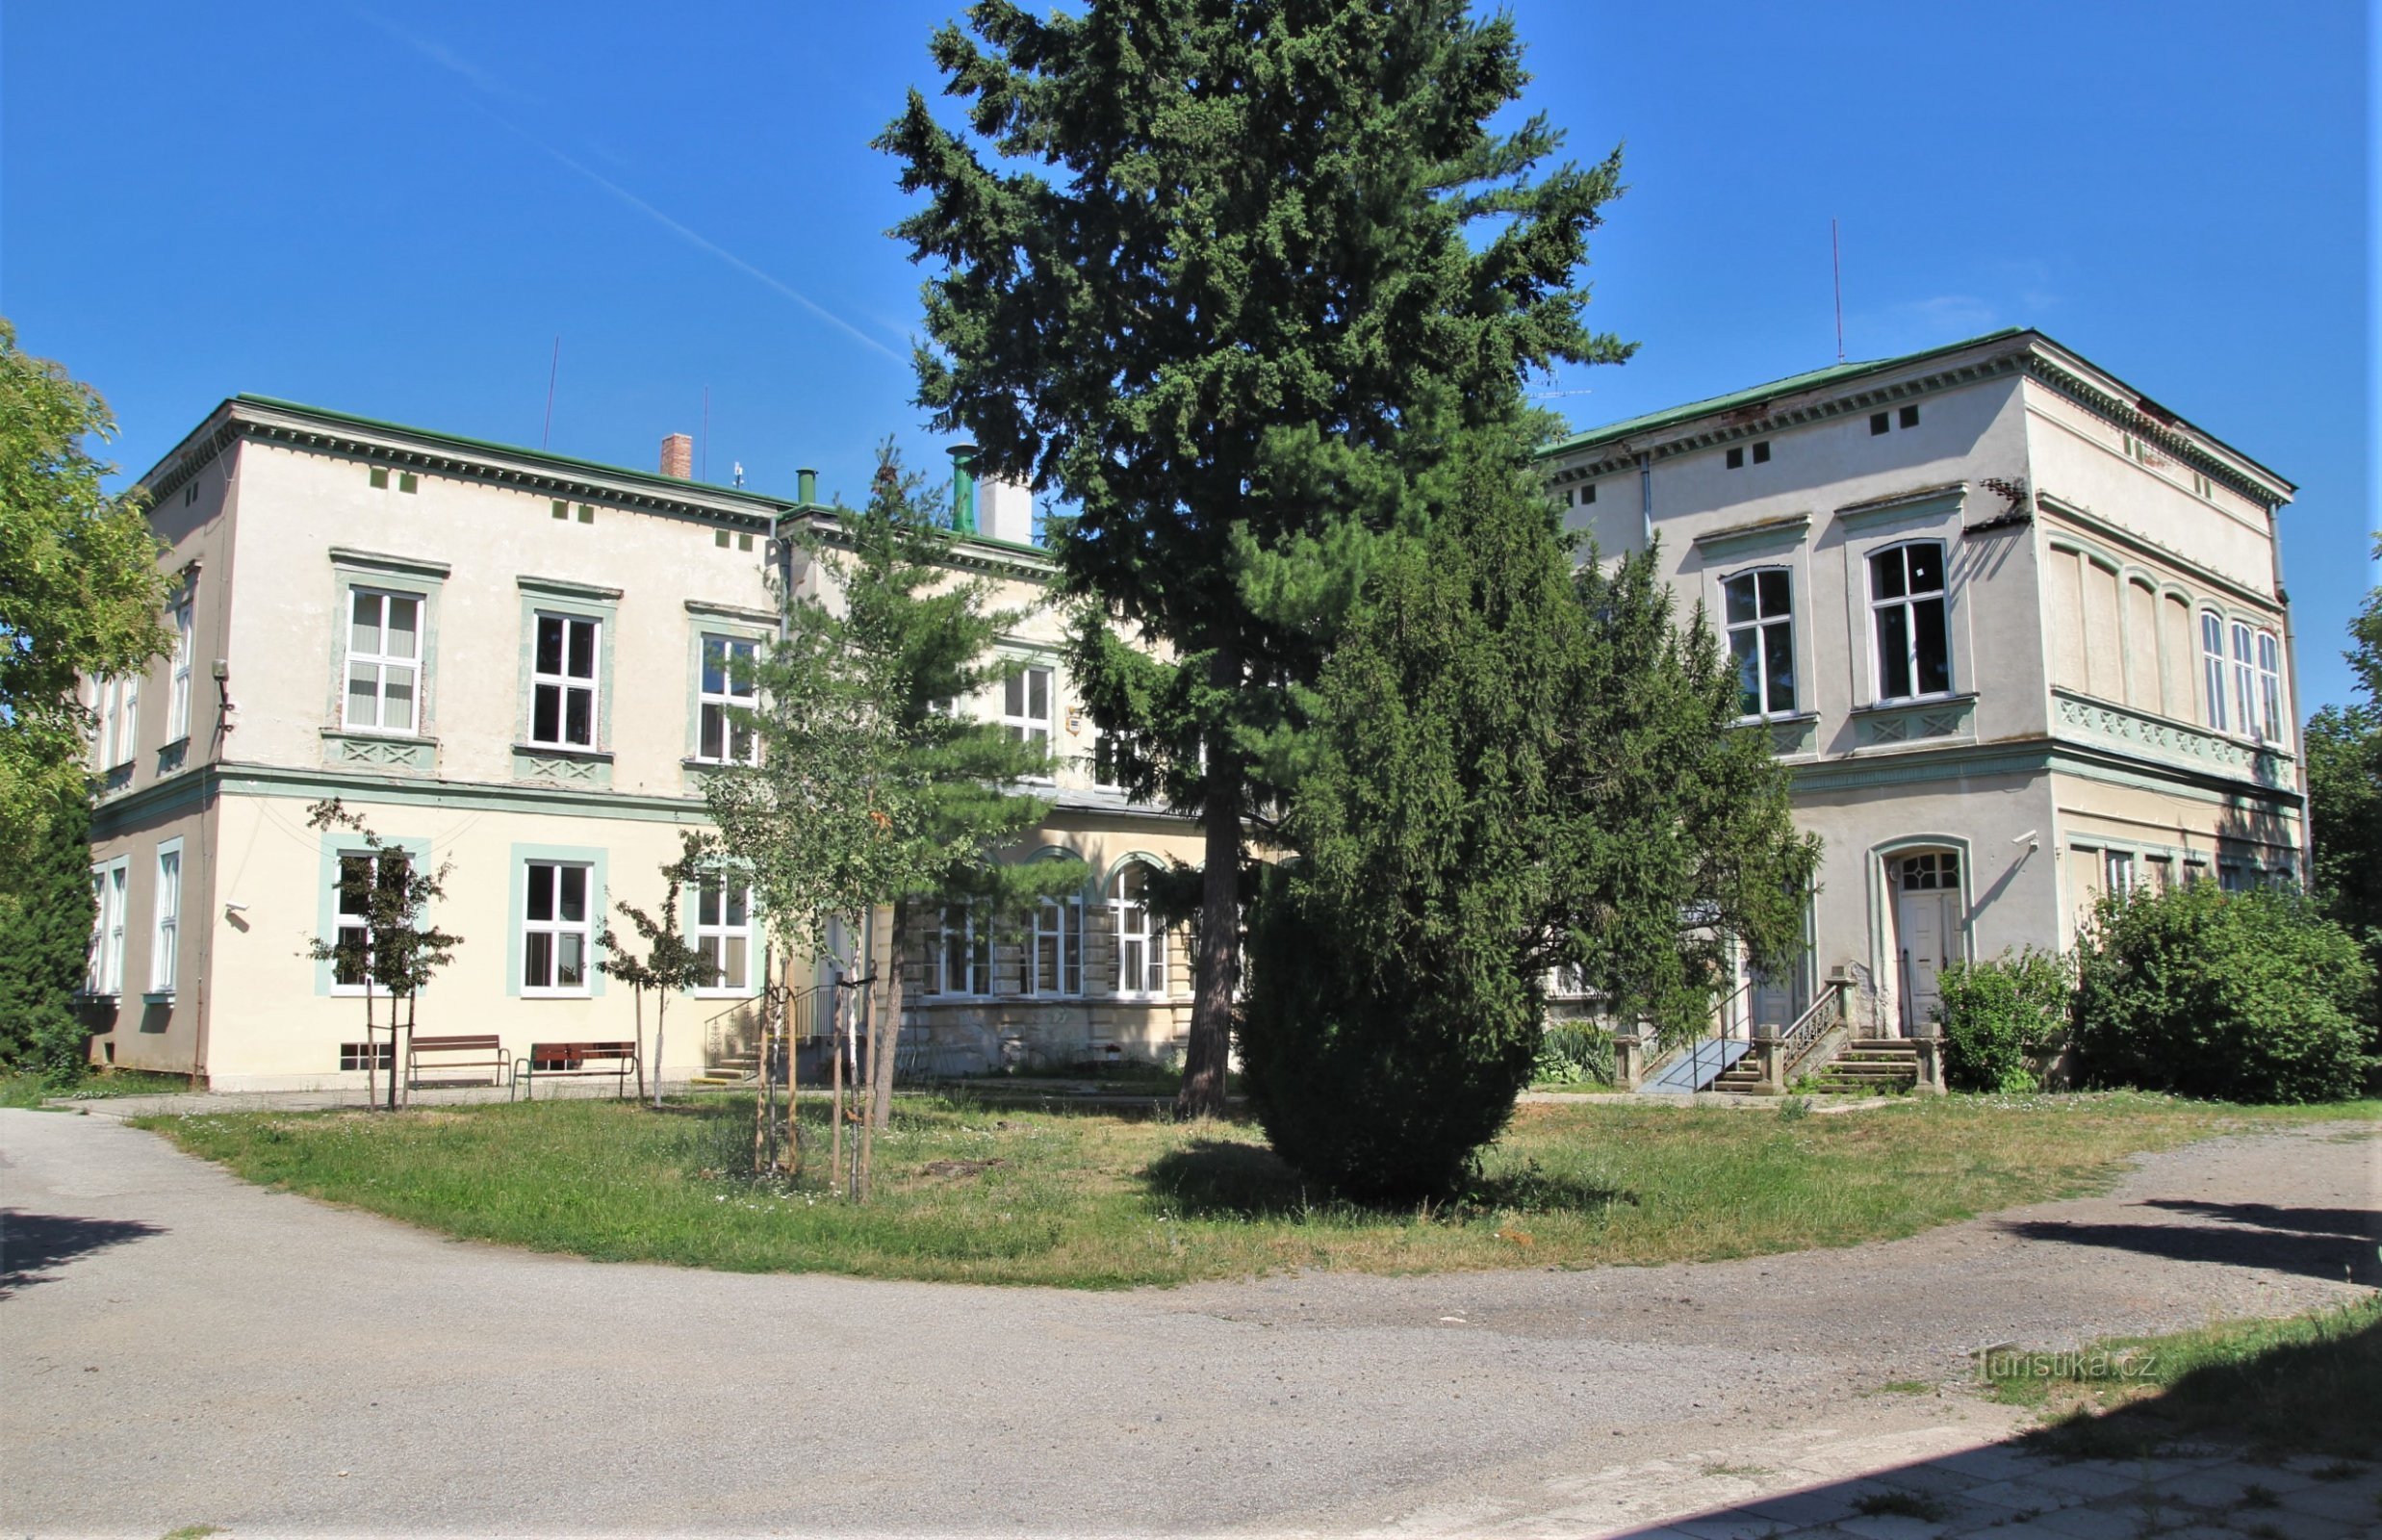 Židlochovice - Område af Roberts villa